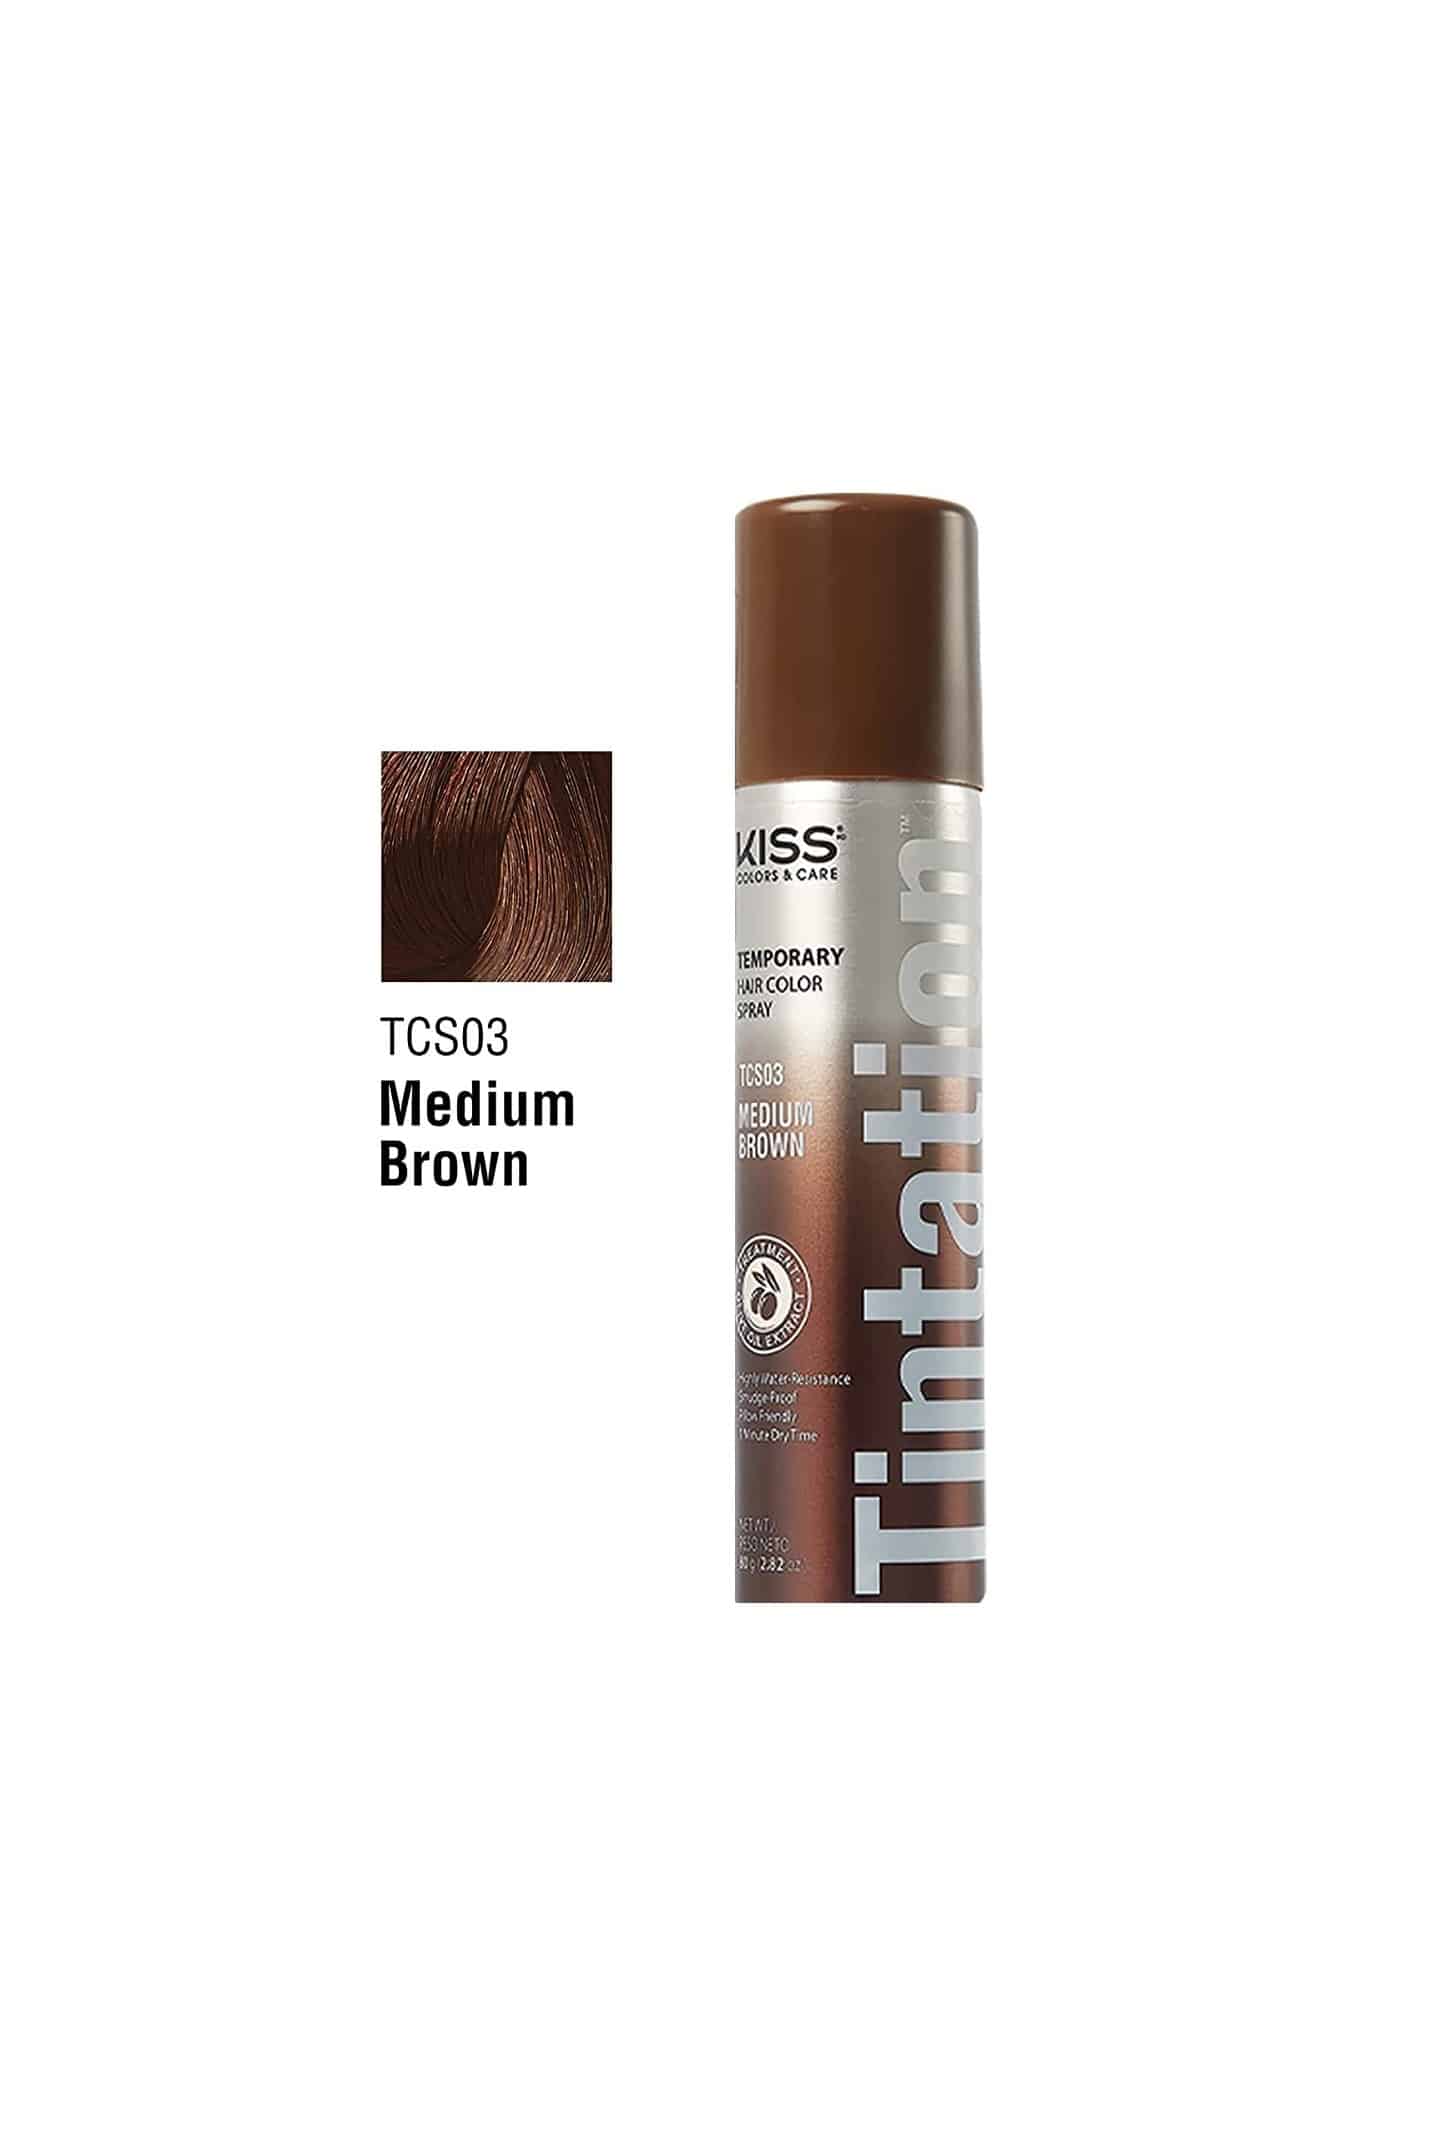 KISS Tintation Temporary Hair Color Spray & Hair Mascara (Medium Brown)